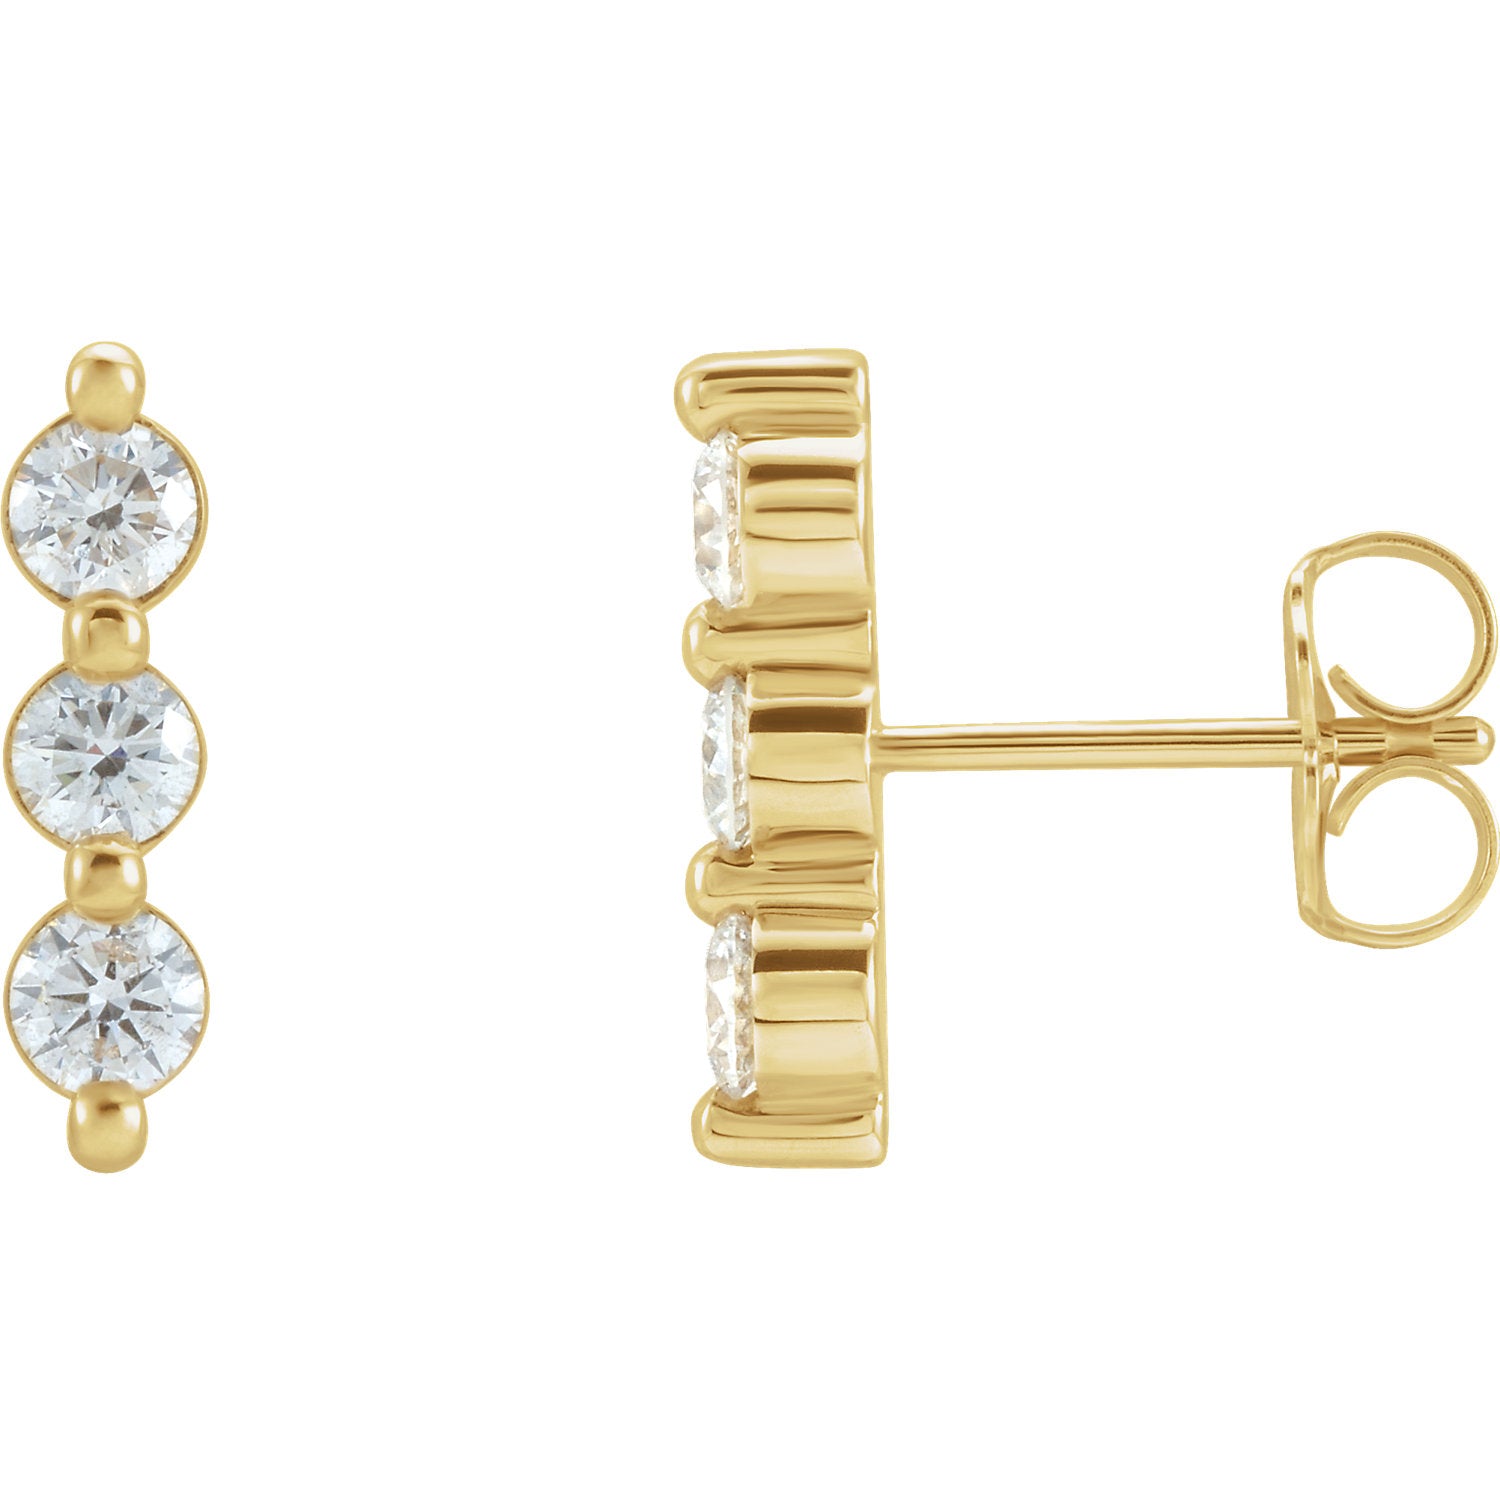 3 Stone Diamond Earrings, 14K Gold 0.24 Ct Diamond Earrings